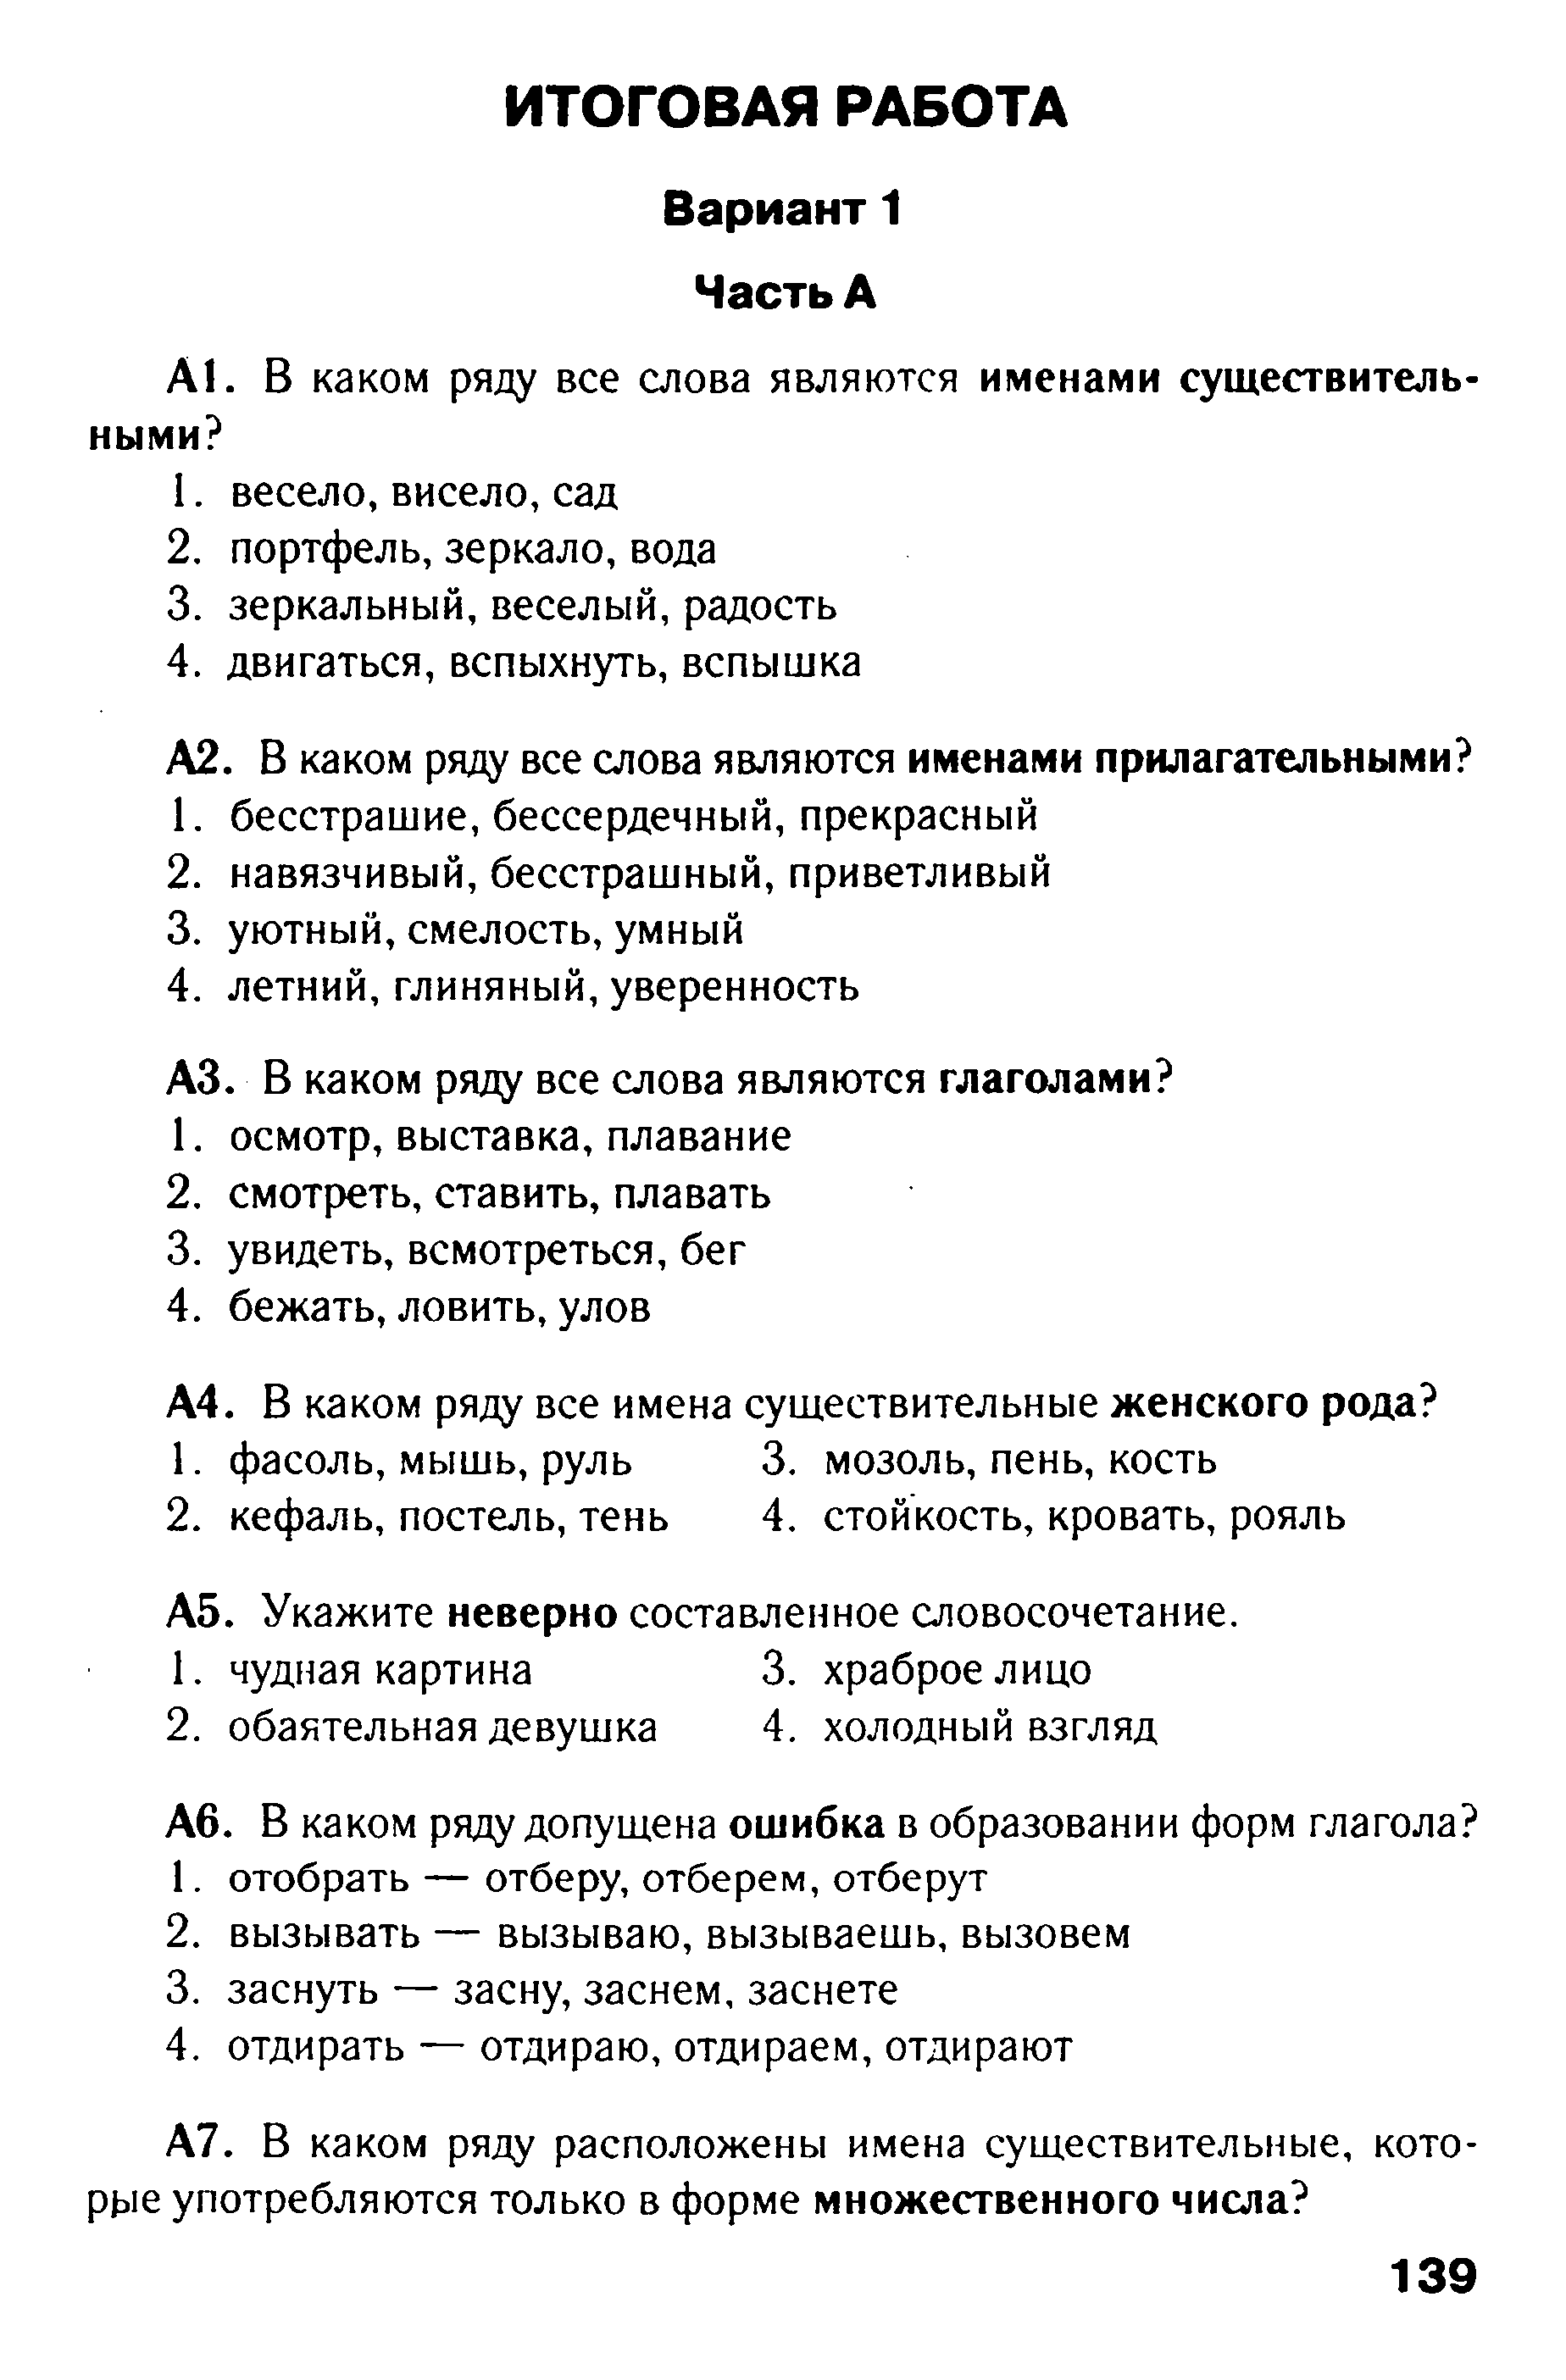 Тест по русскому языку в формате ГИА на тему: Морфология. Орфография вариант 1 (5 класс)